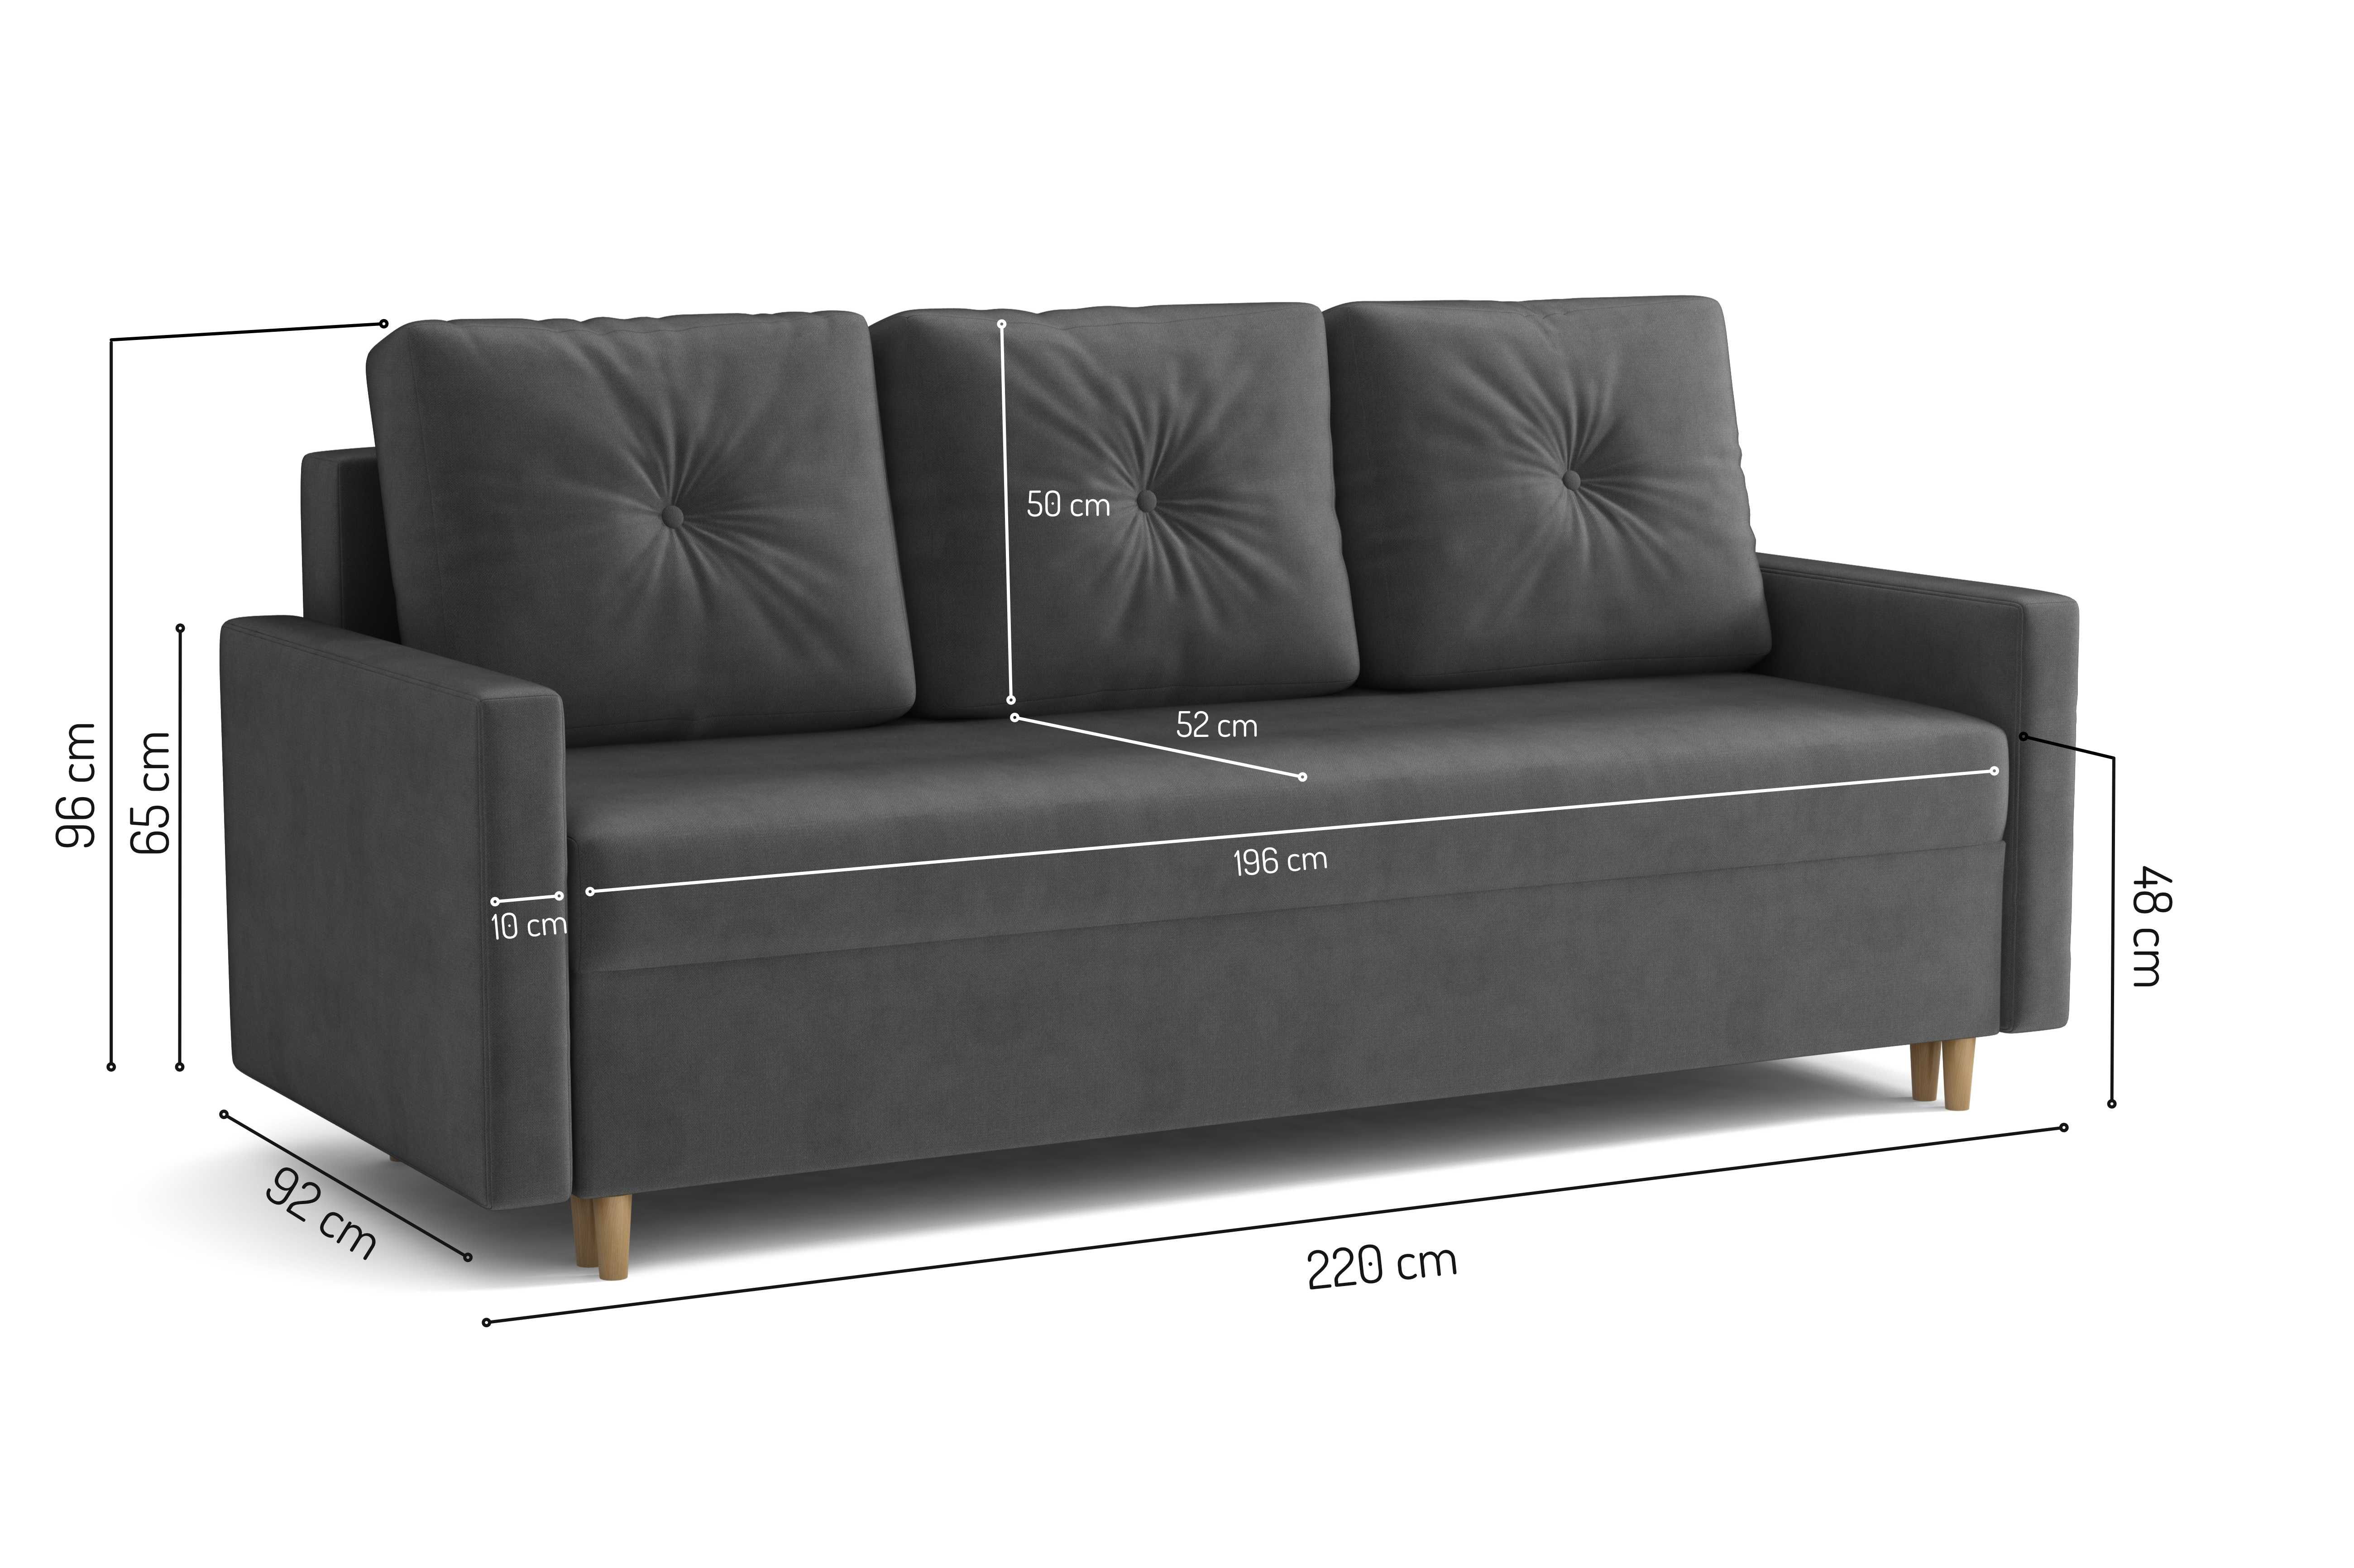 Zestaw komplet wypoczynkowy kanapa Skandynawska i fotel Uszak. Sofa